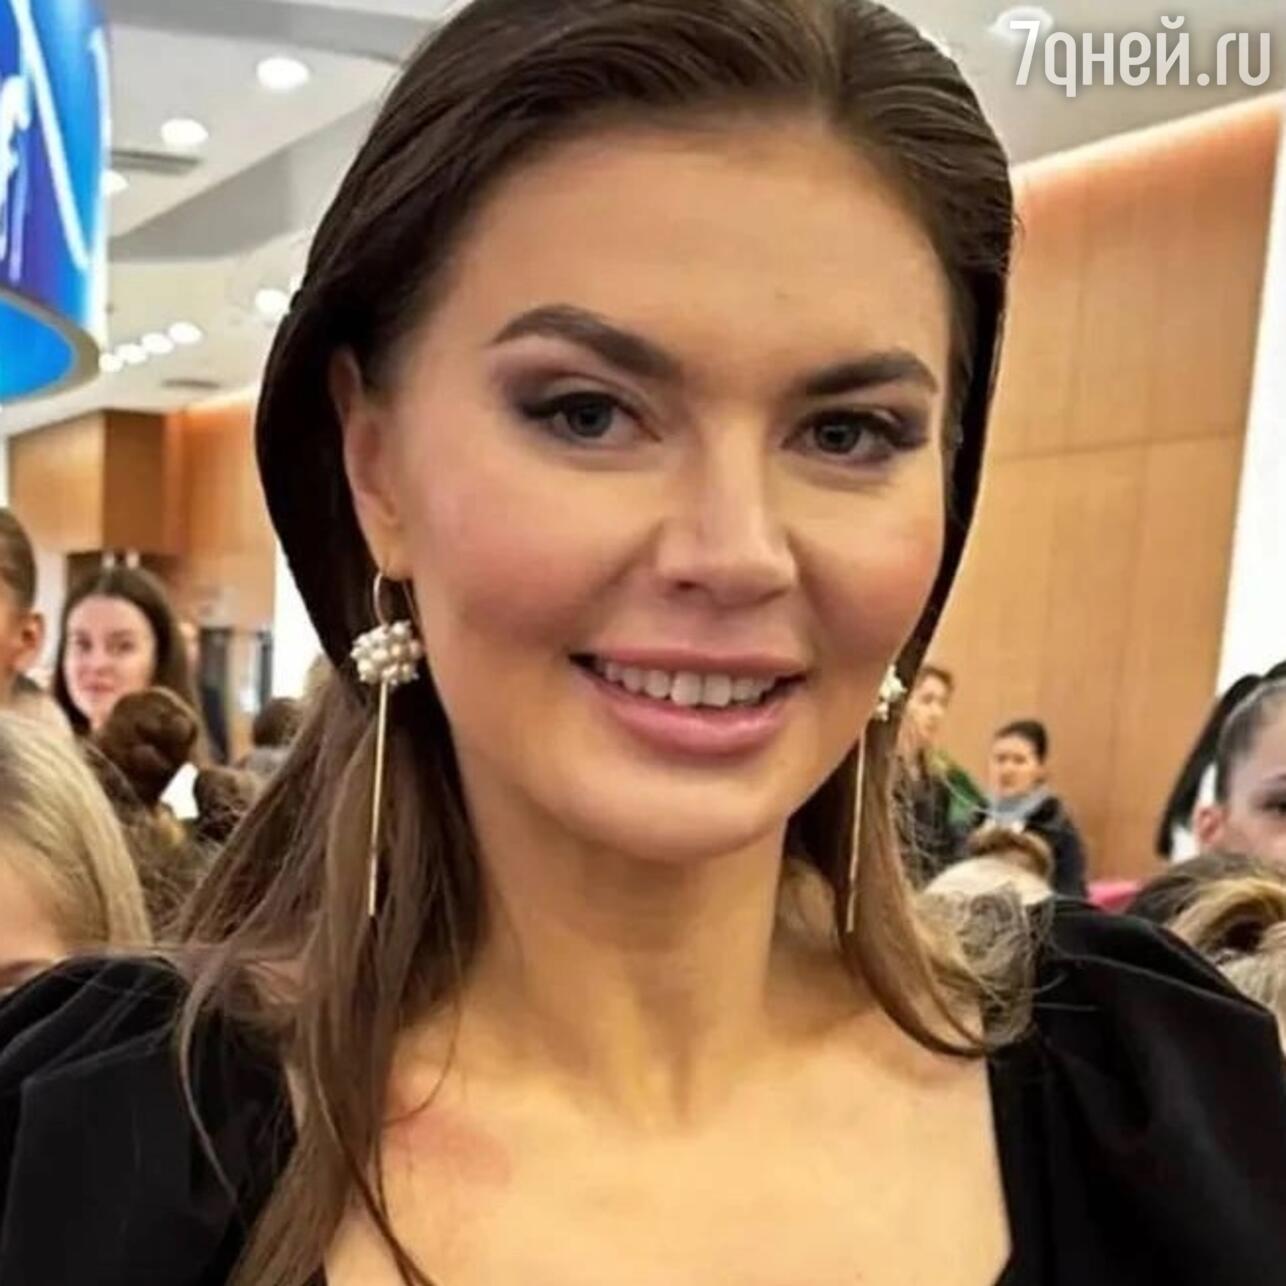 Алина Кабаева выступила с важным заявлением - 7Дней.ру